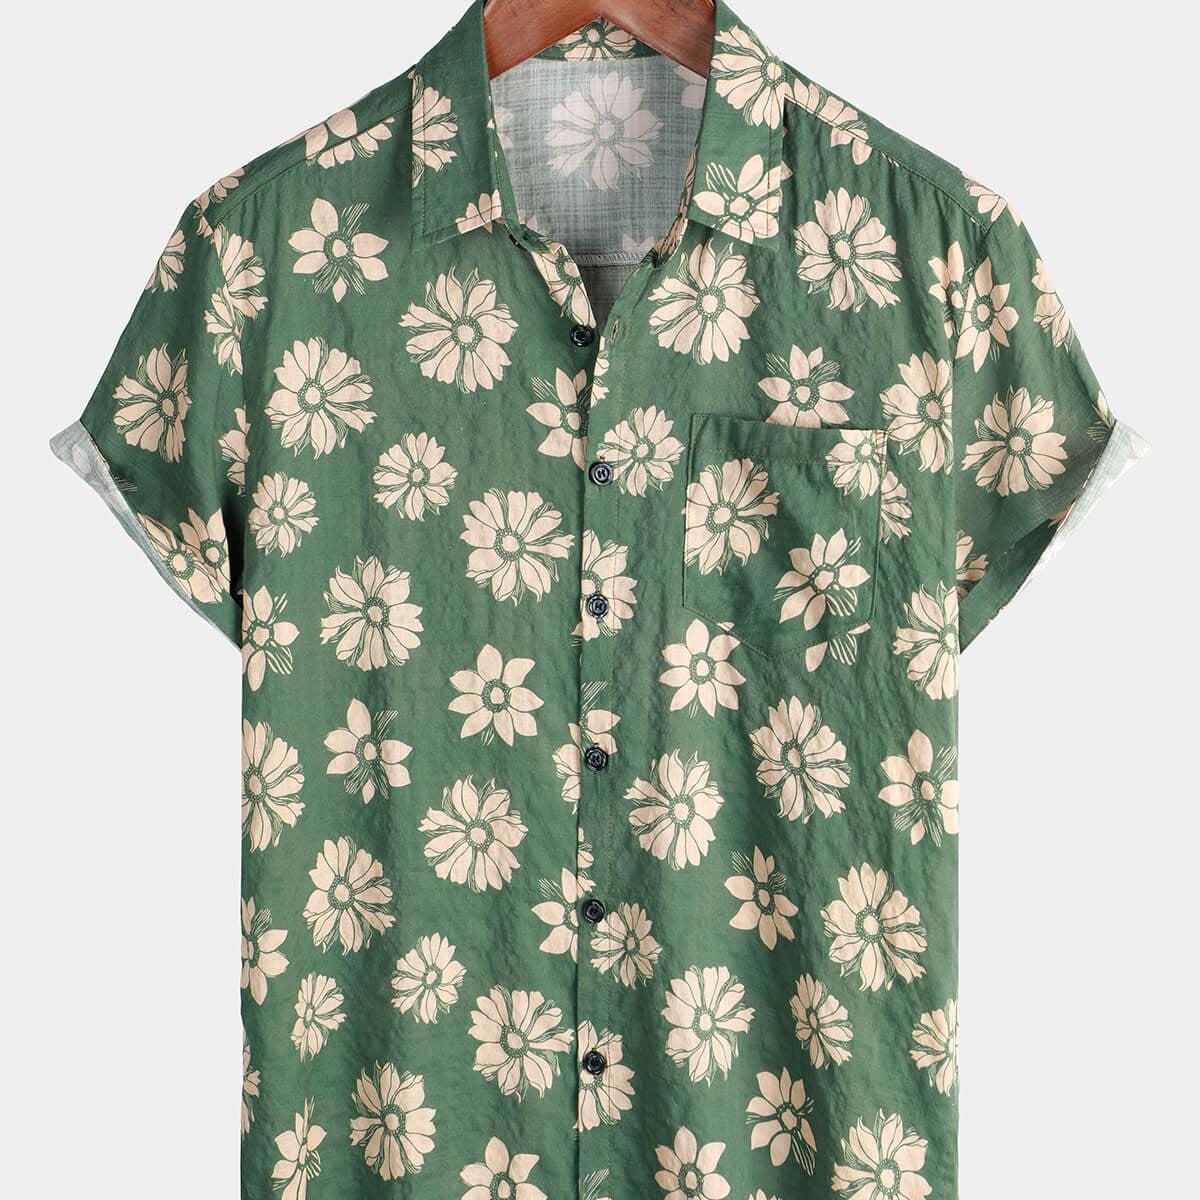 Men's Green Floral Hawaiian Short Sleeve Button Holiday Summer Shirt